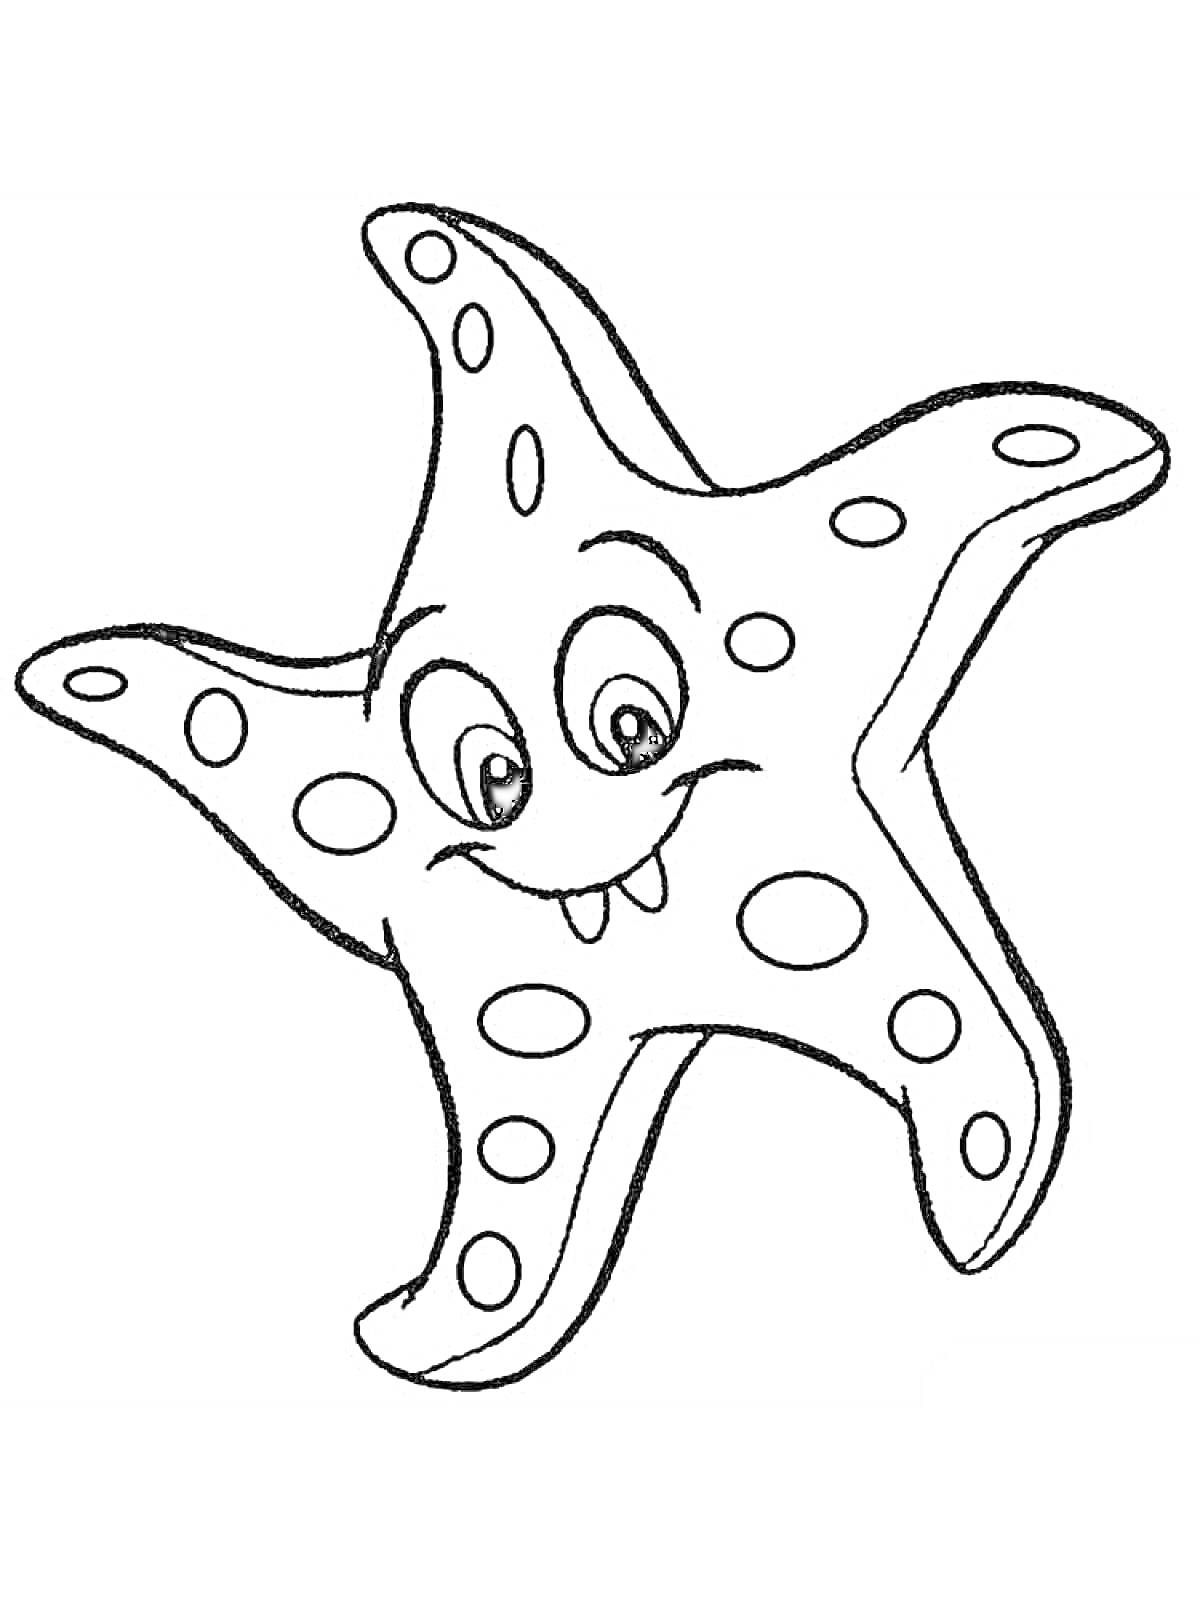 Раскраска Морская звезда с улыбающимся лицом и пятнами на лучах